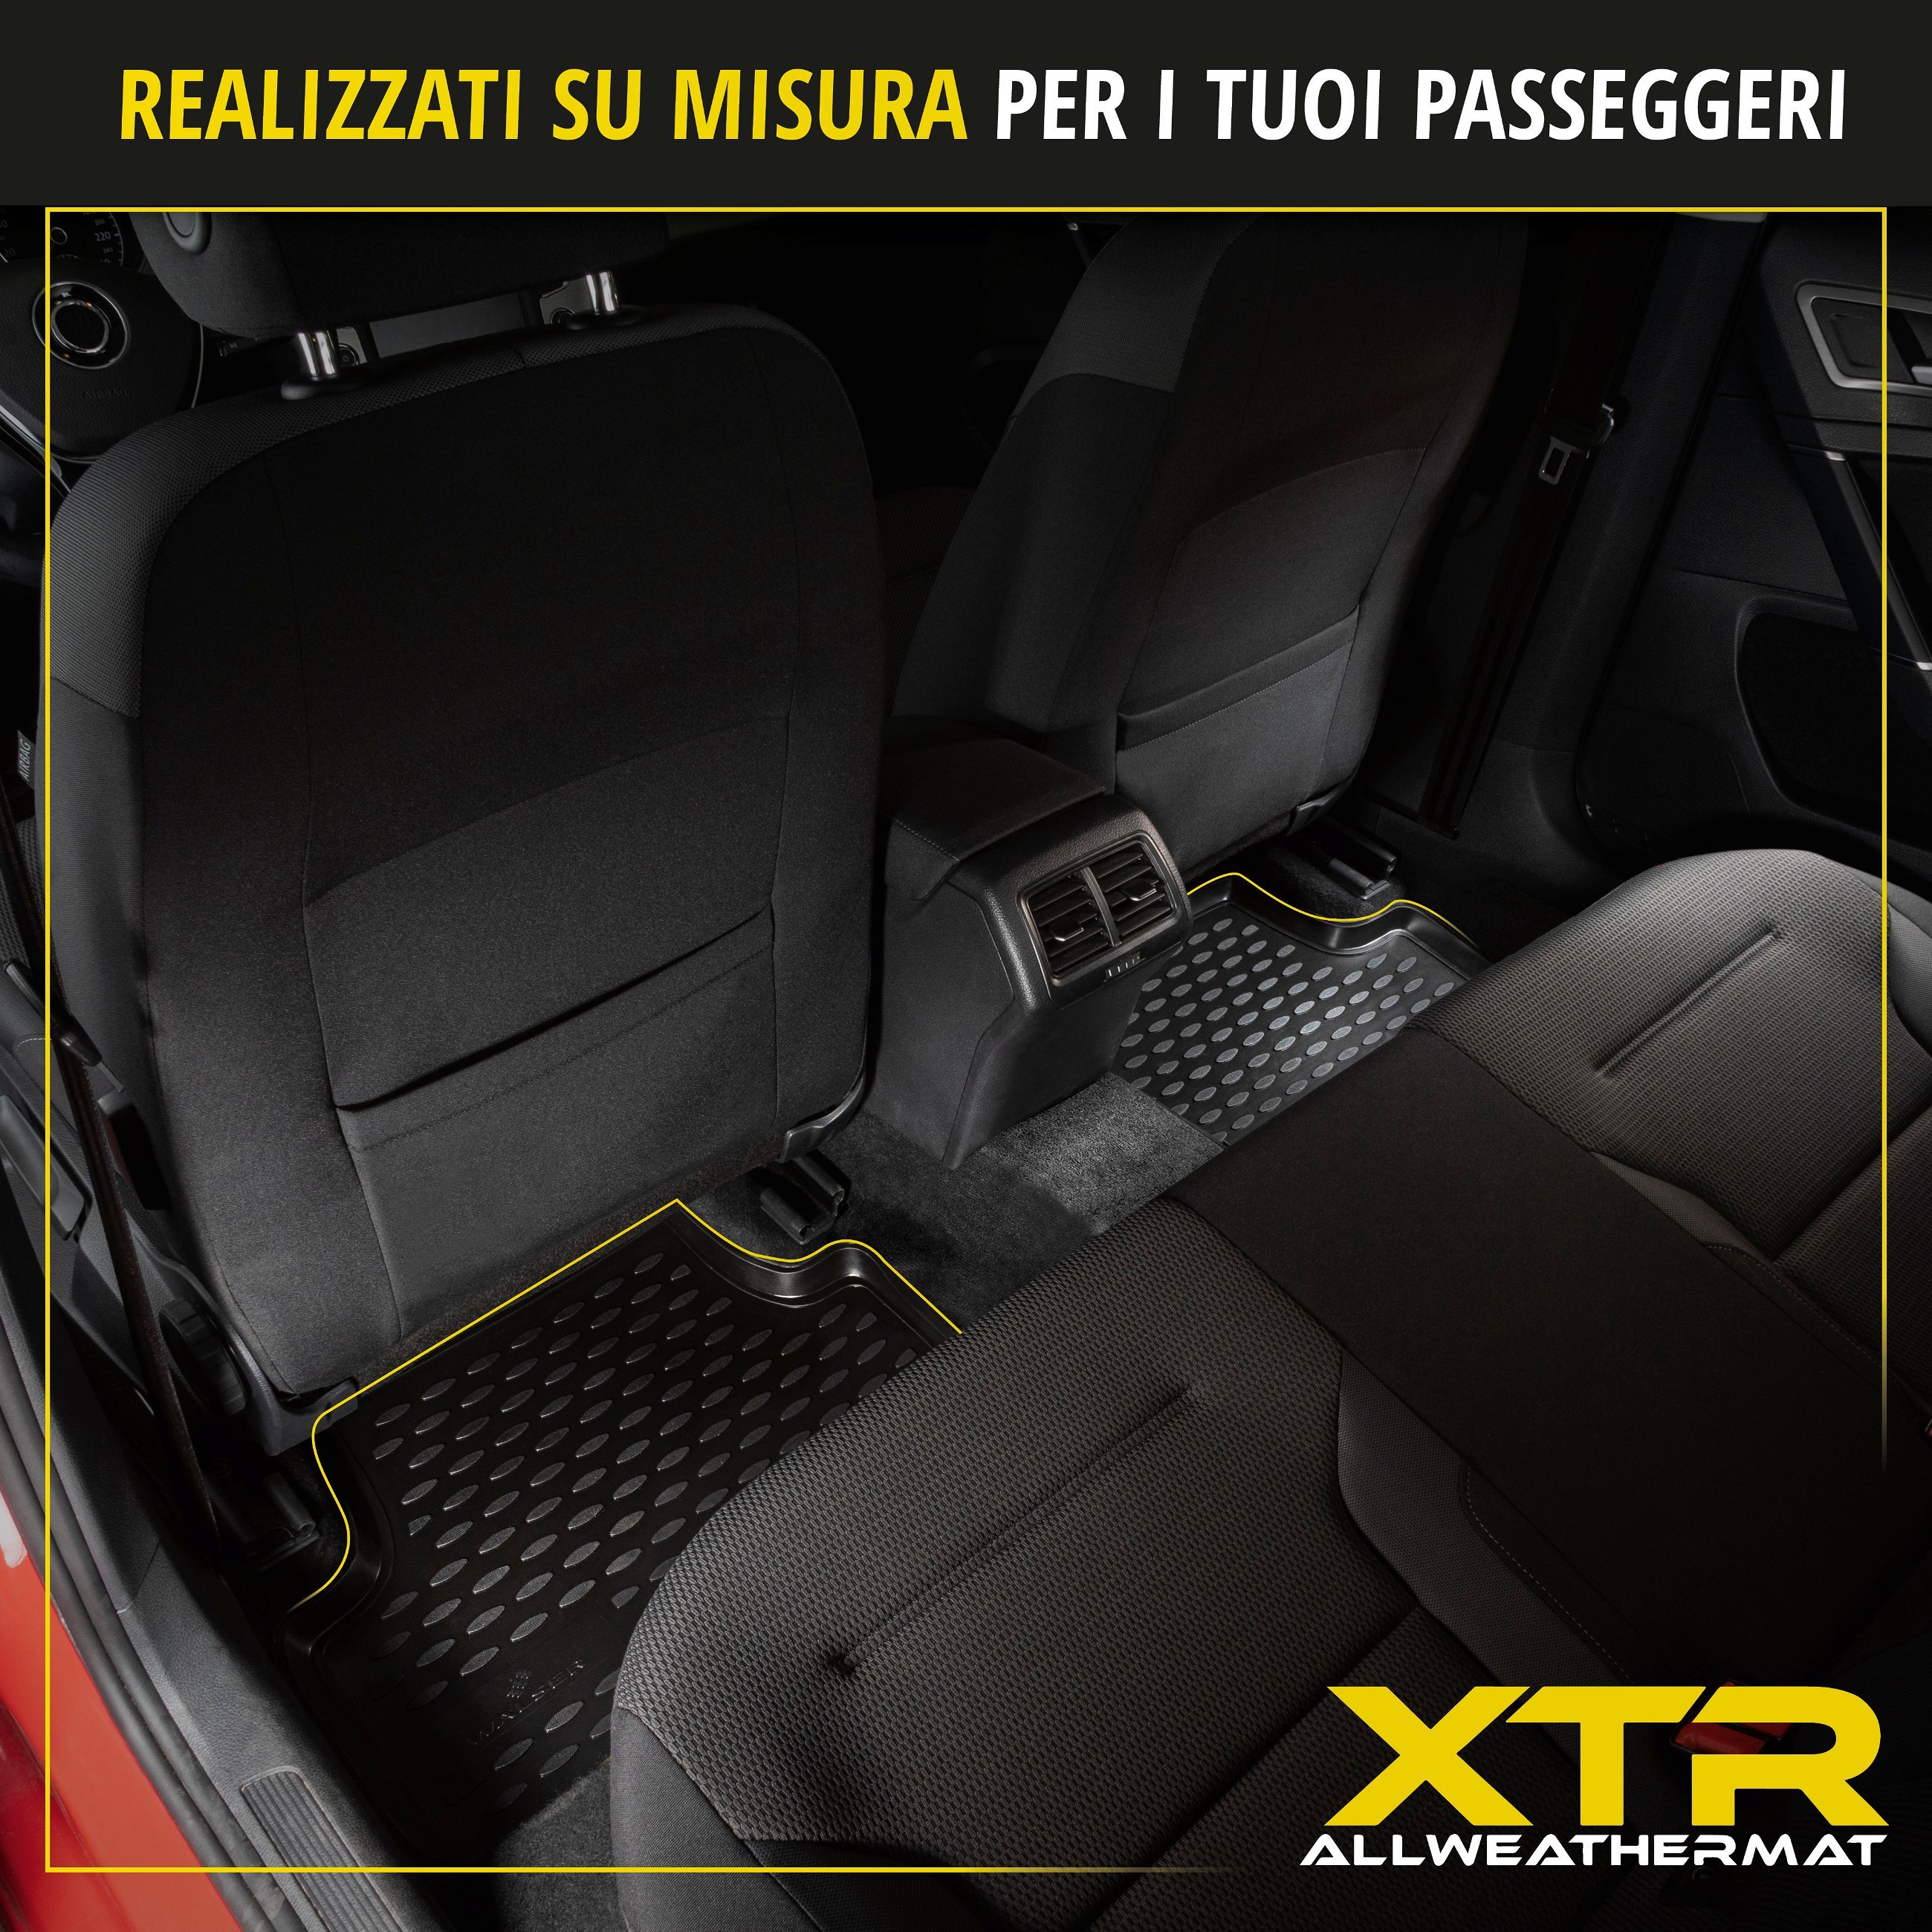 Tappetini in gomma per auto su misura XTR per Dacia Duster seconda generazione 2017 - 2018